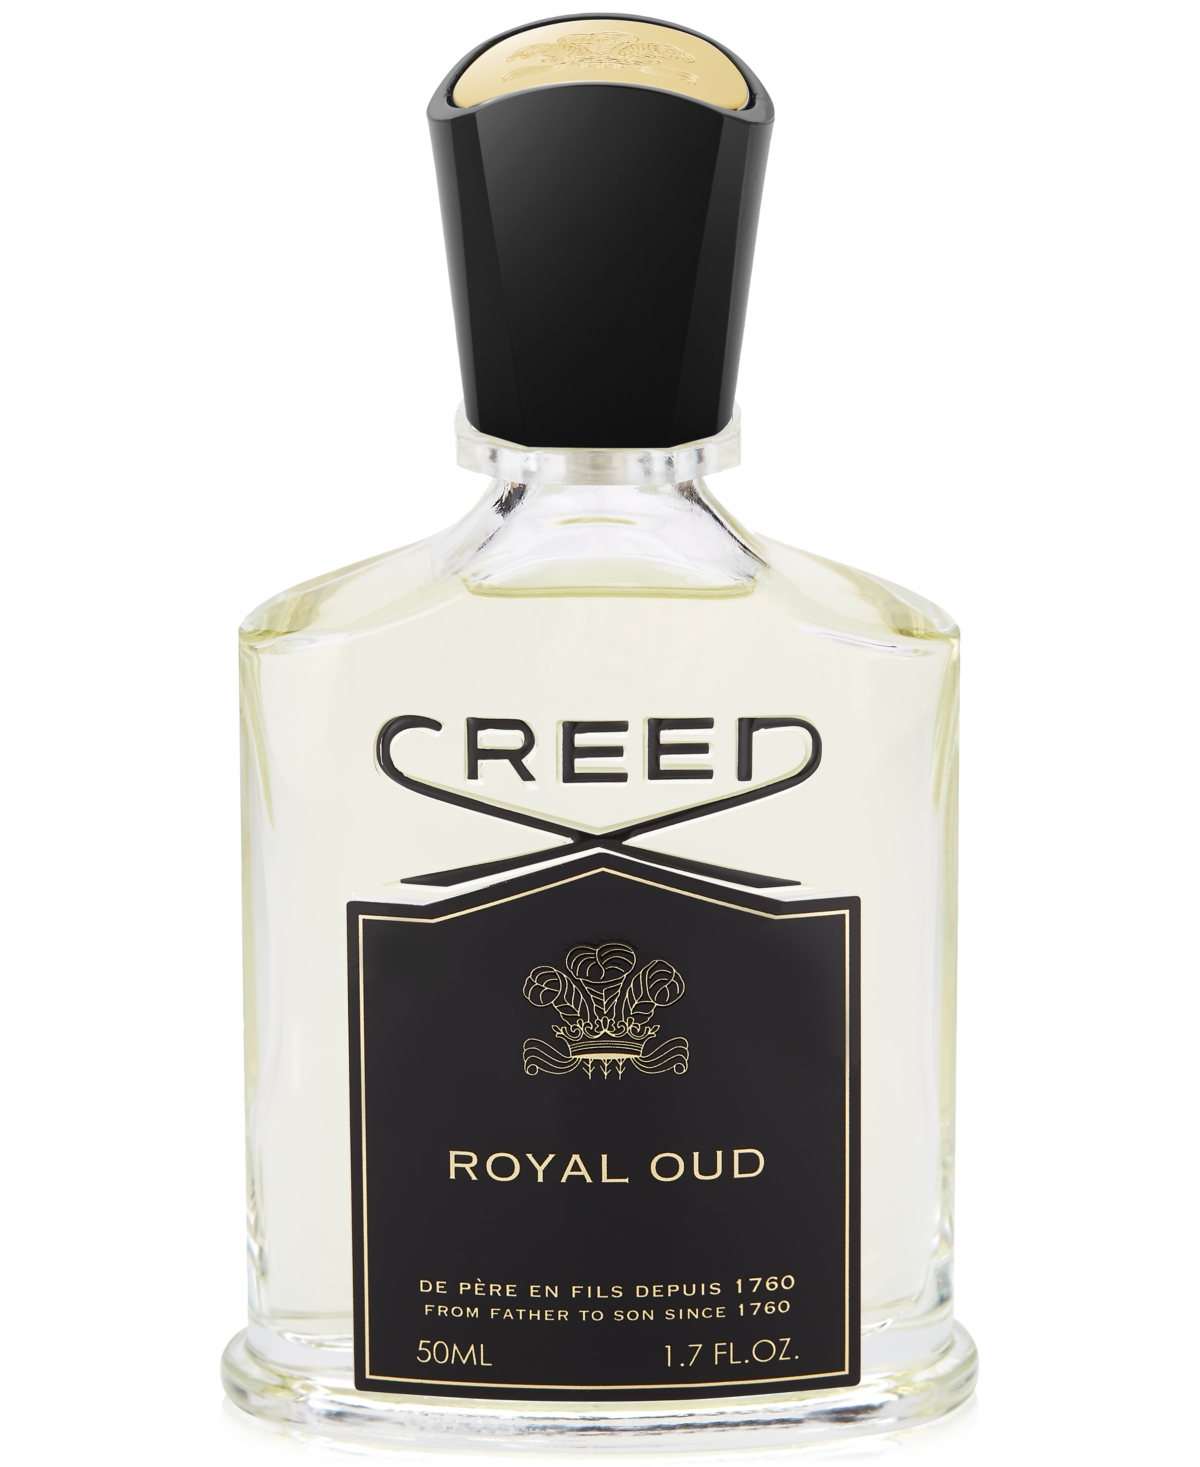 Creed Royal Oud, 1.7 Oz.